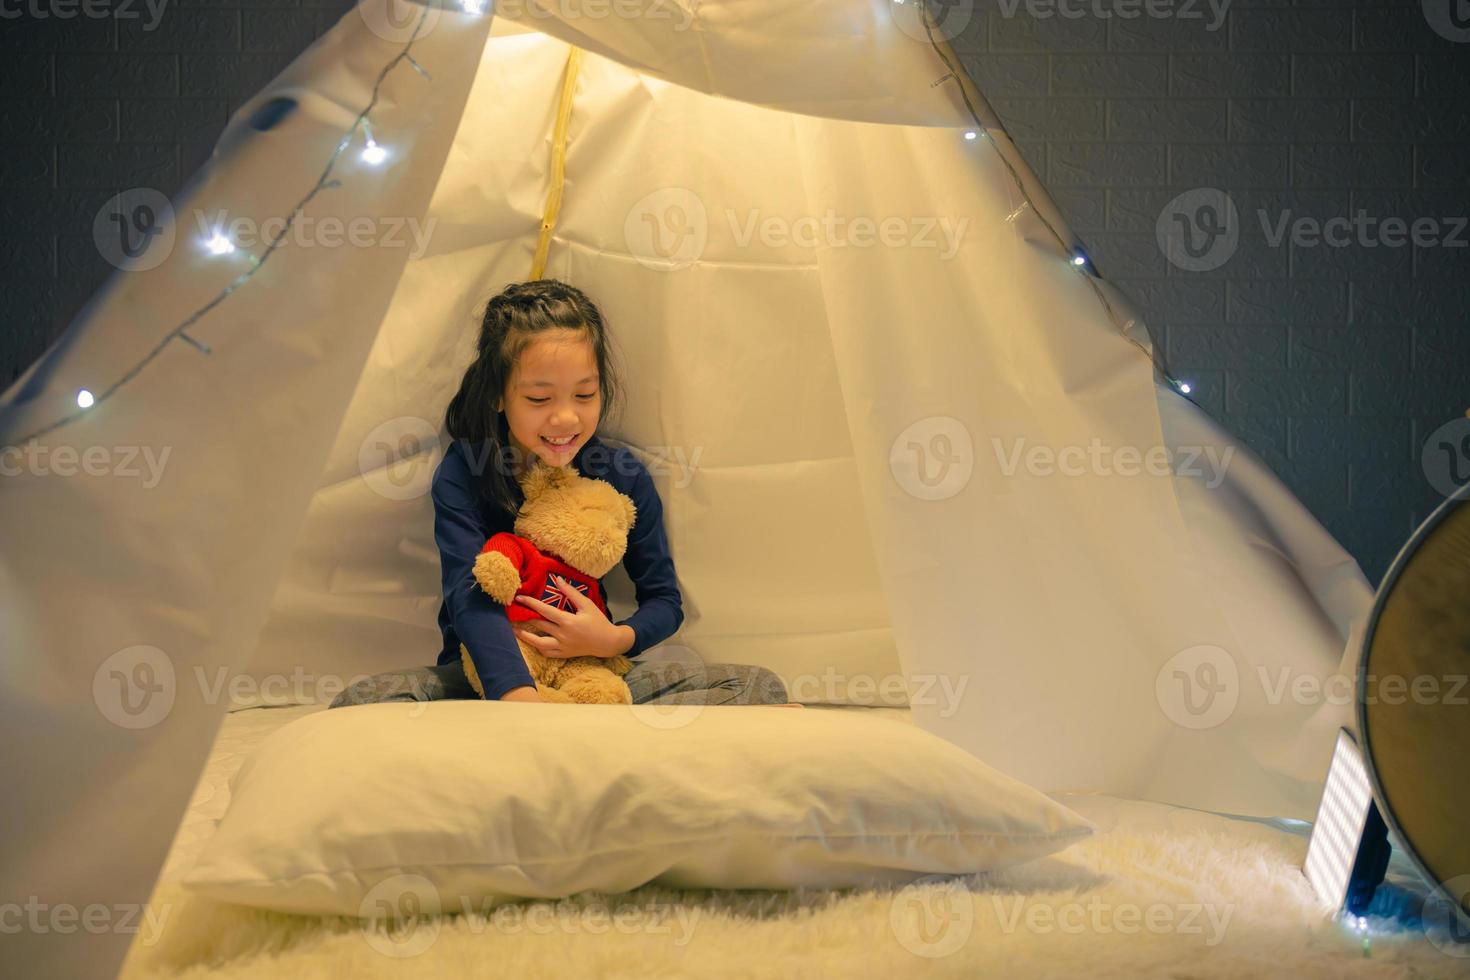 petite fille lisant un livre dans une tente, enfant heureux jouant à la maison, drôle d'enfant charmant s'amusant dans la chambre des enfants. photo